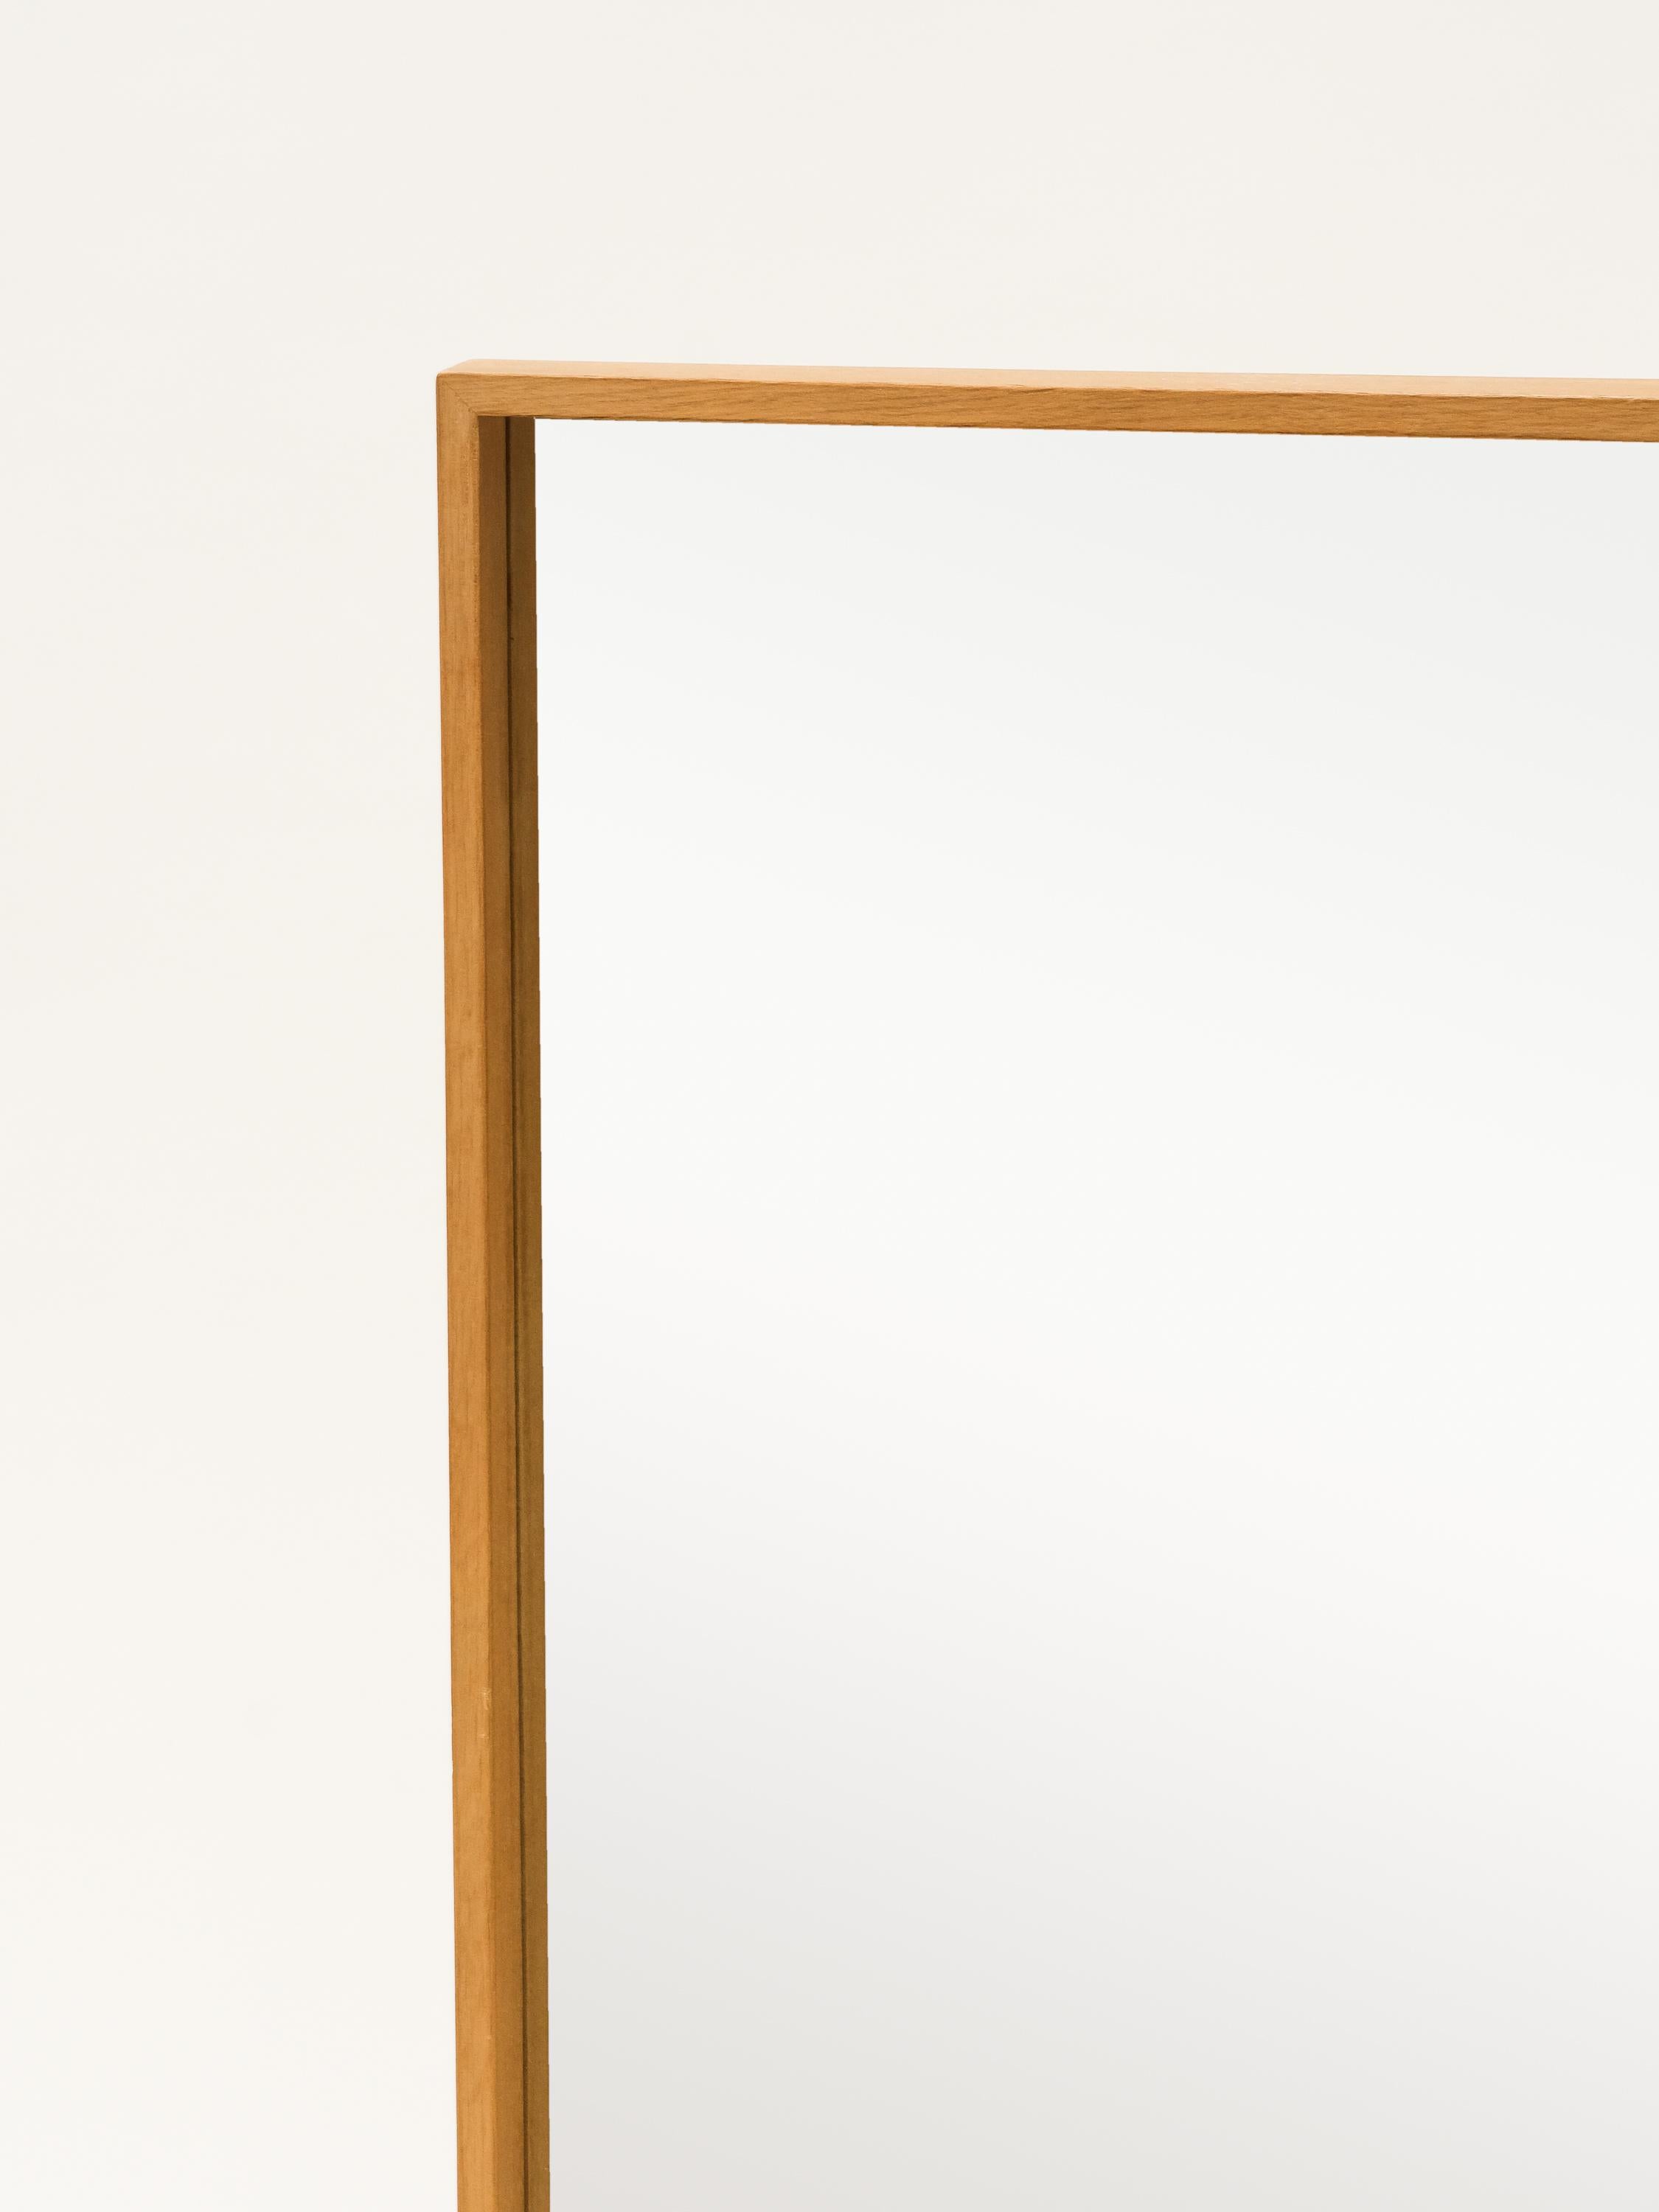 Ein eleganter Wandspiegel von AB Glas & Trä Hovmantorp,. Hergestellt in Schweden.

Rahmen aus Eichenholz und Originalglas.